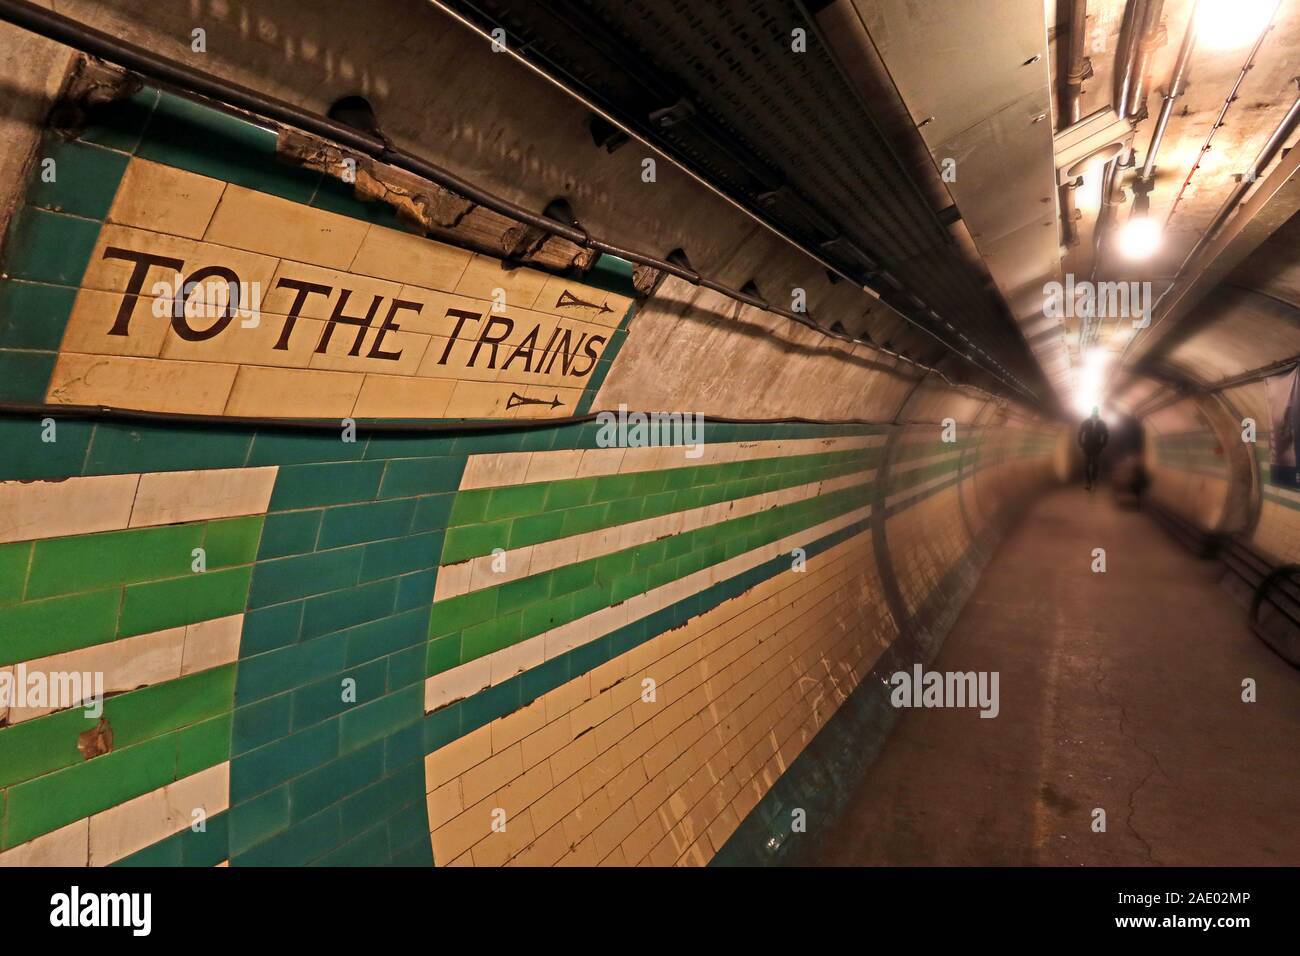 Les Trains à la signer, London Underground Tunnel, vers le bas dans la station de métro à minuit, Londres, Angleterre du Sud-Est, Royaume-Uni Banque D'Images